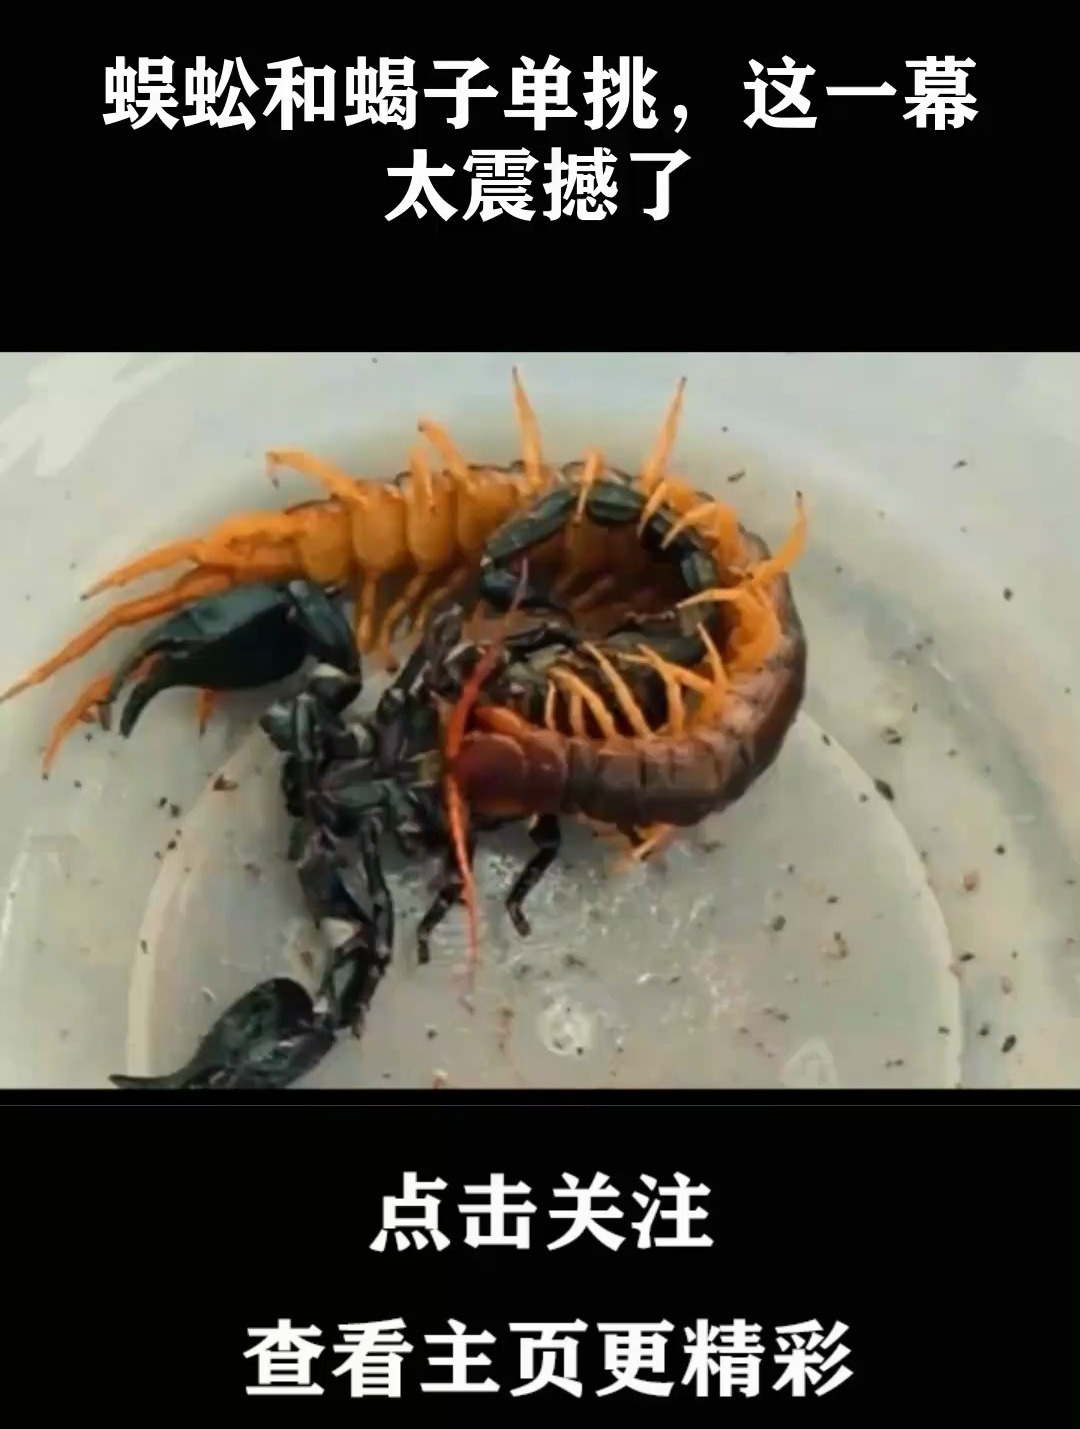 蜈蚣vs面包虫图片